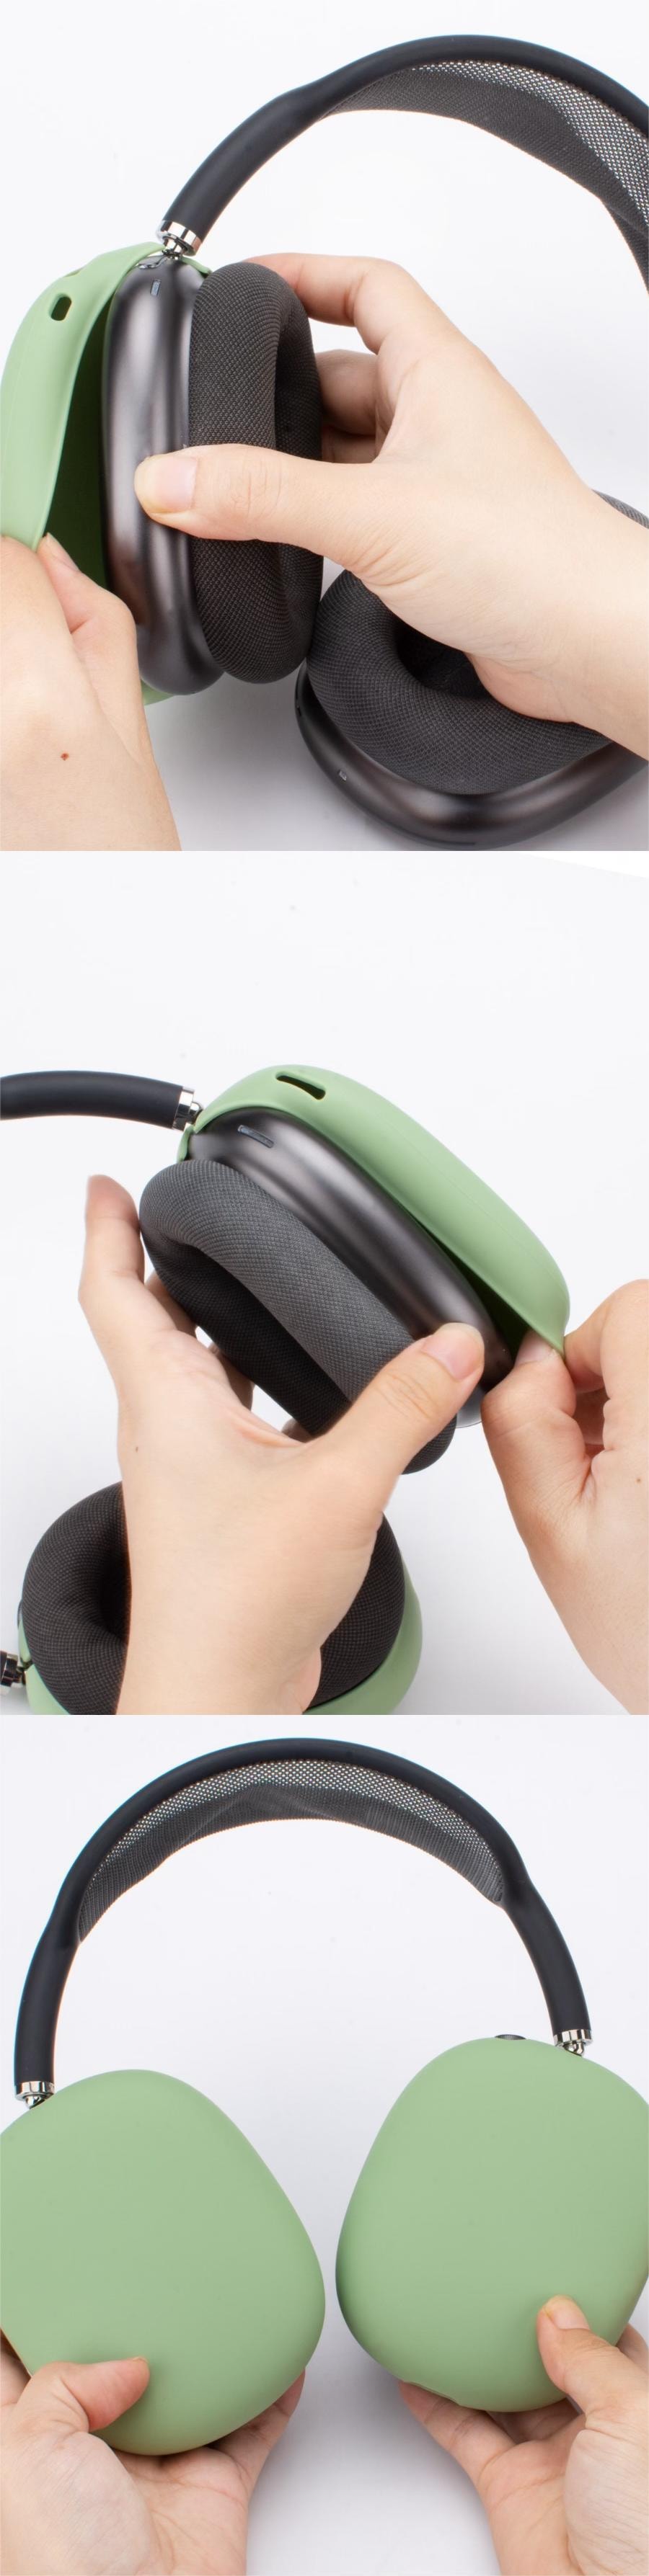 【中国直邮】FOXTAIL 苹果 Airpods Max 耳机保护套/头戴式硅胶防磕碰耳机壳 Max 三件套 - 香薰紫|*预计到达时间3-4周